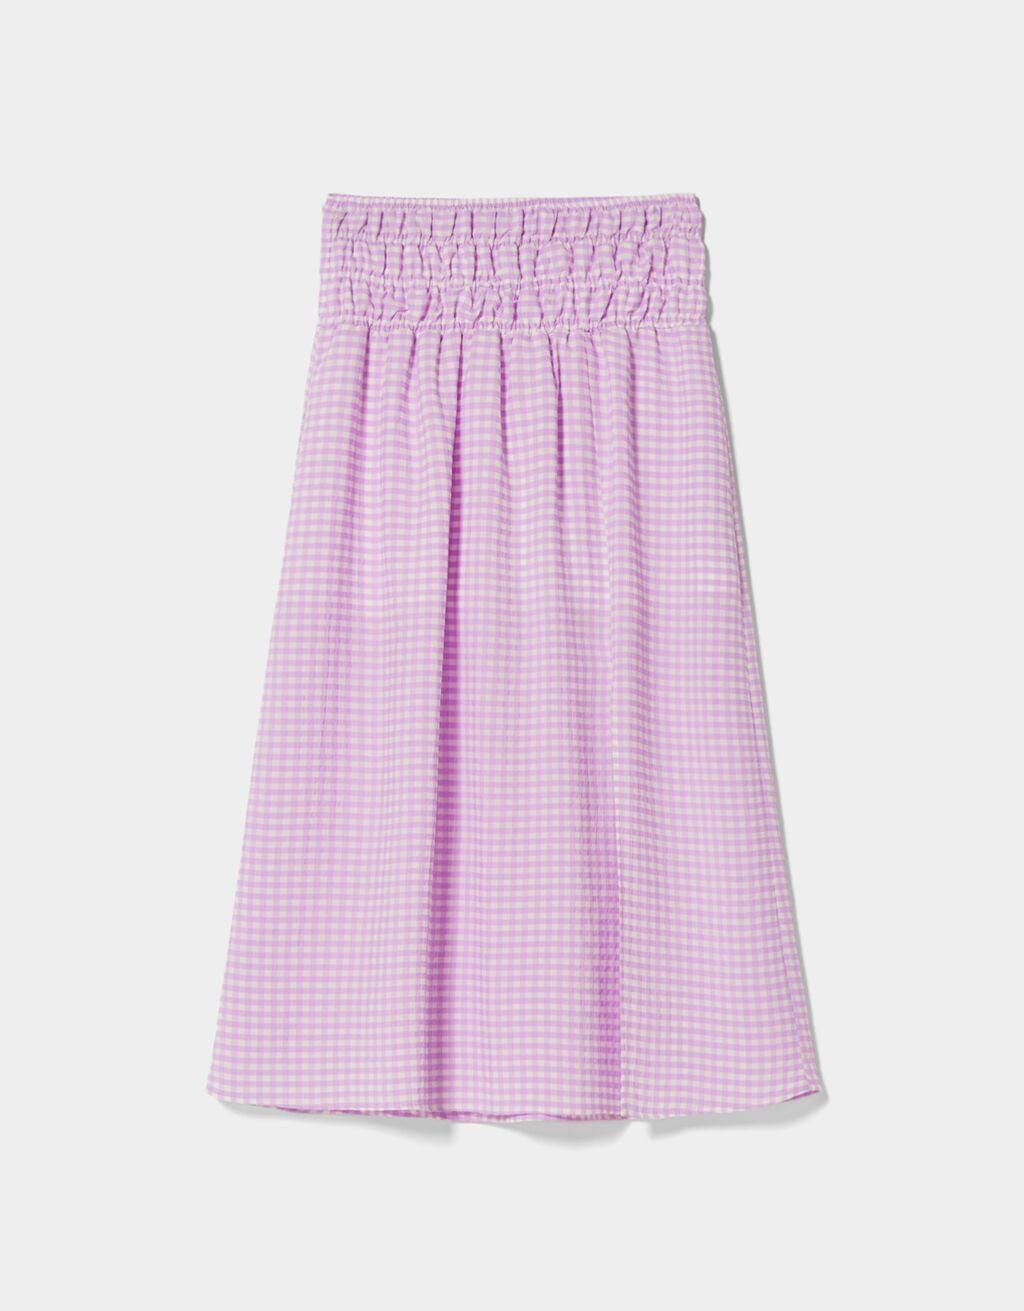 Gingham midi skirt with an elastic waistband